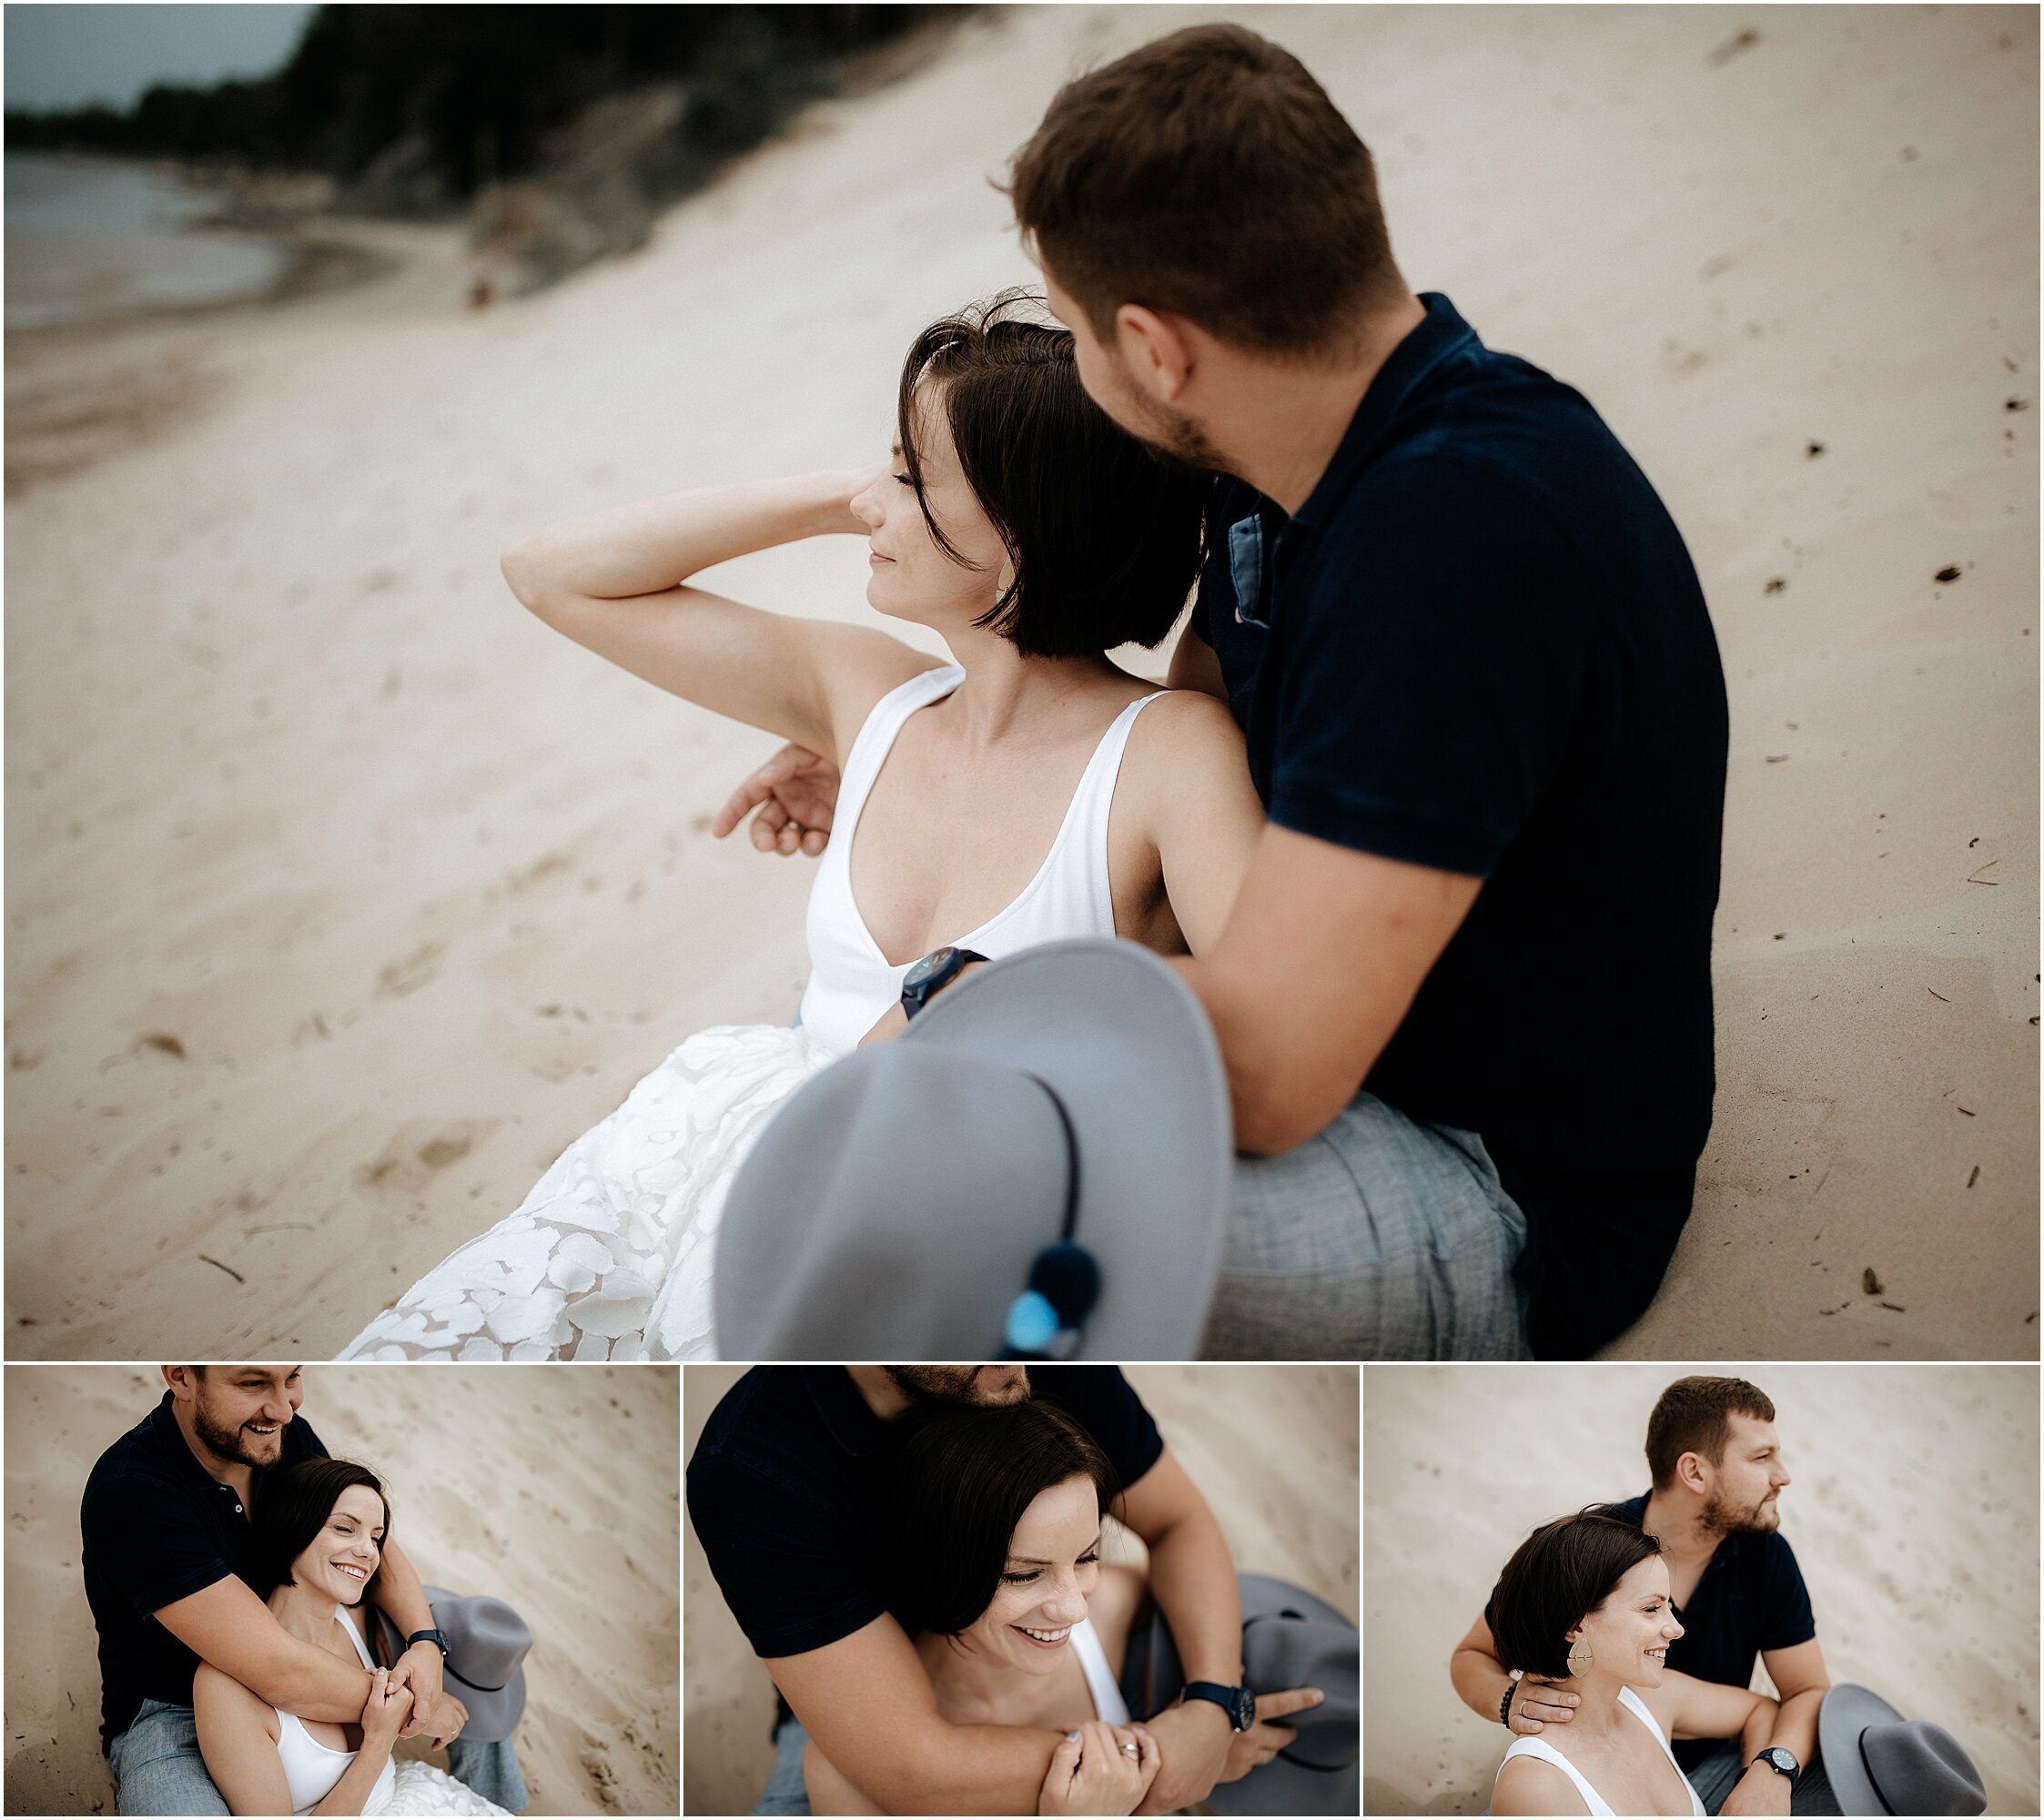 Zanda+Auckland+wedding+photographer+romantic+couple+portrait++white+sand+dunes+Europe+Latvia+New+Zealand_2.jpeg